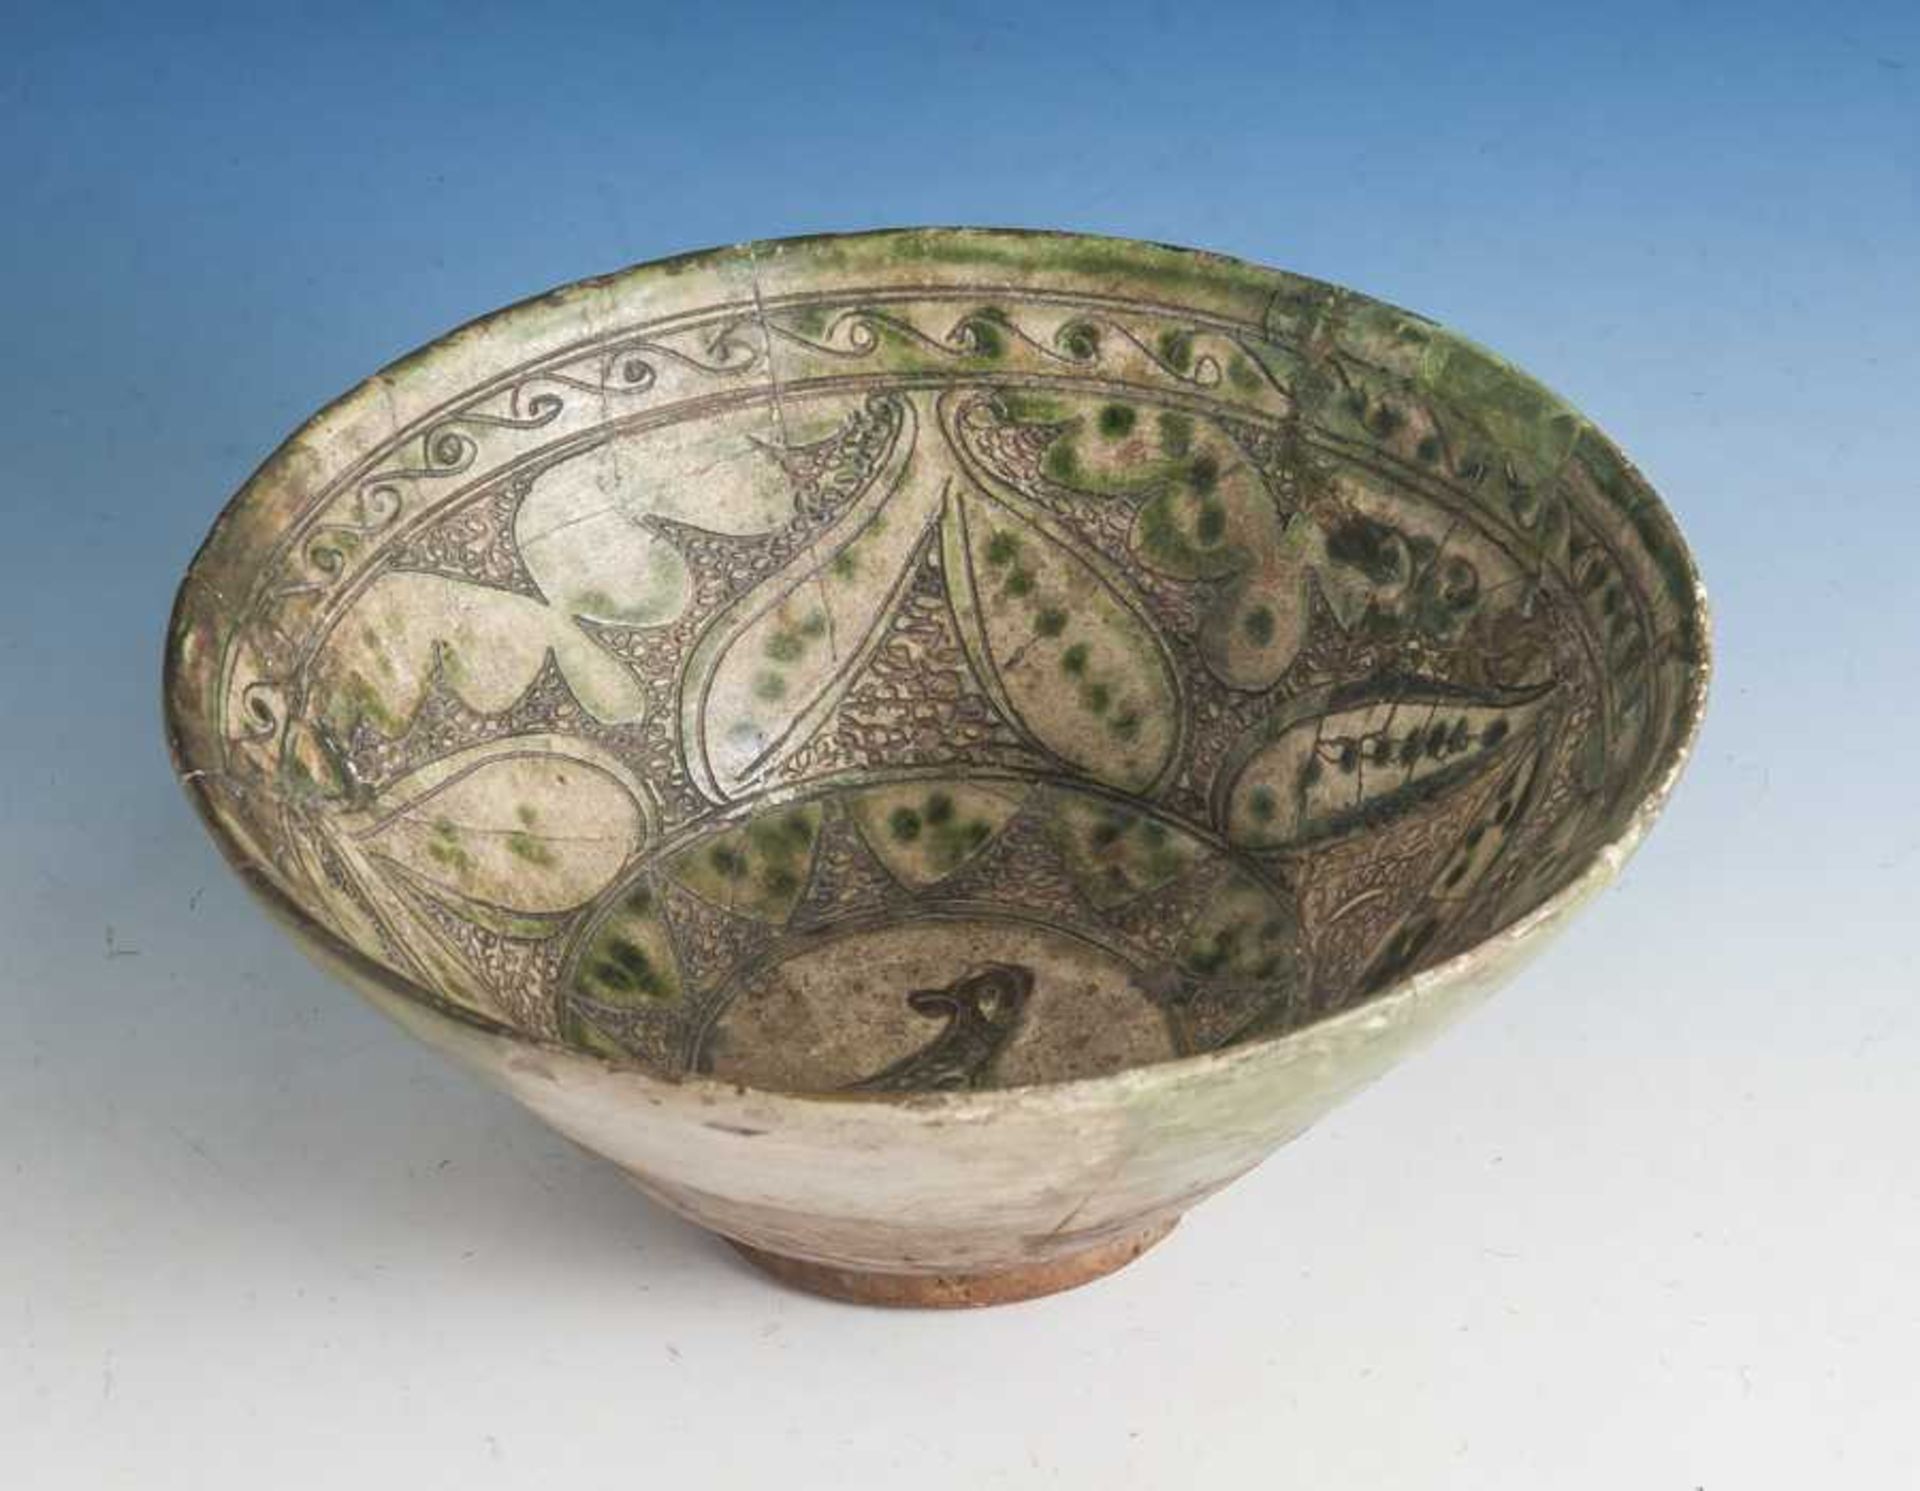 Keramikschale, Iran, 13.-15. Jahrh., konisch auslaufende Form über rundem Standring.Partiell grün